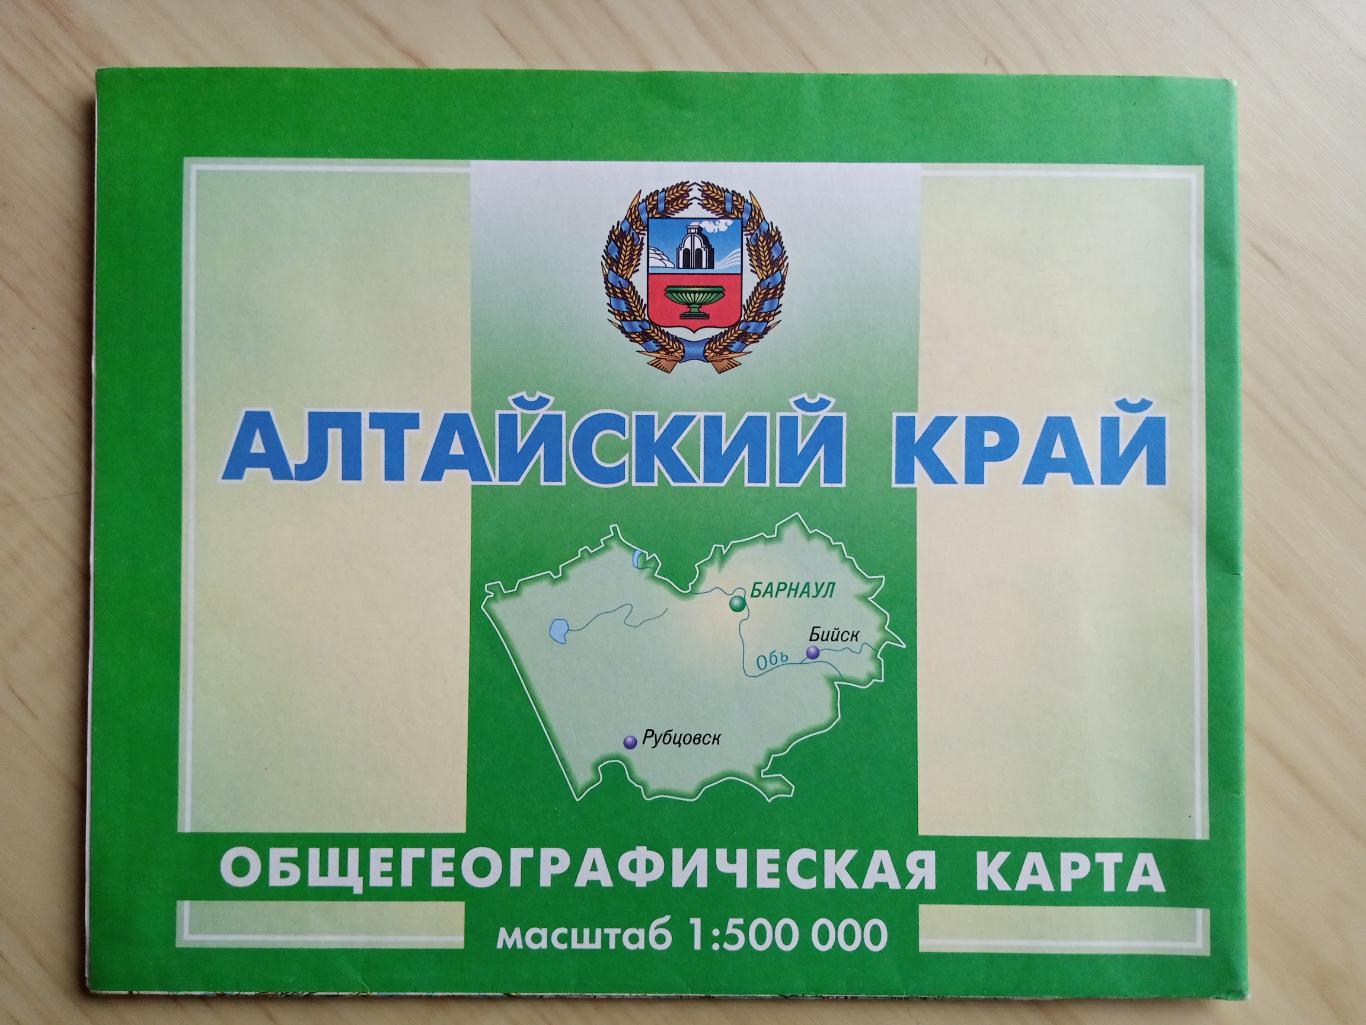 Общегеографическая карта Алтайский край